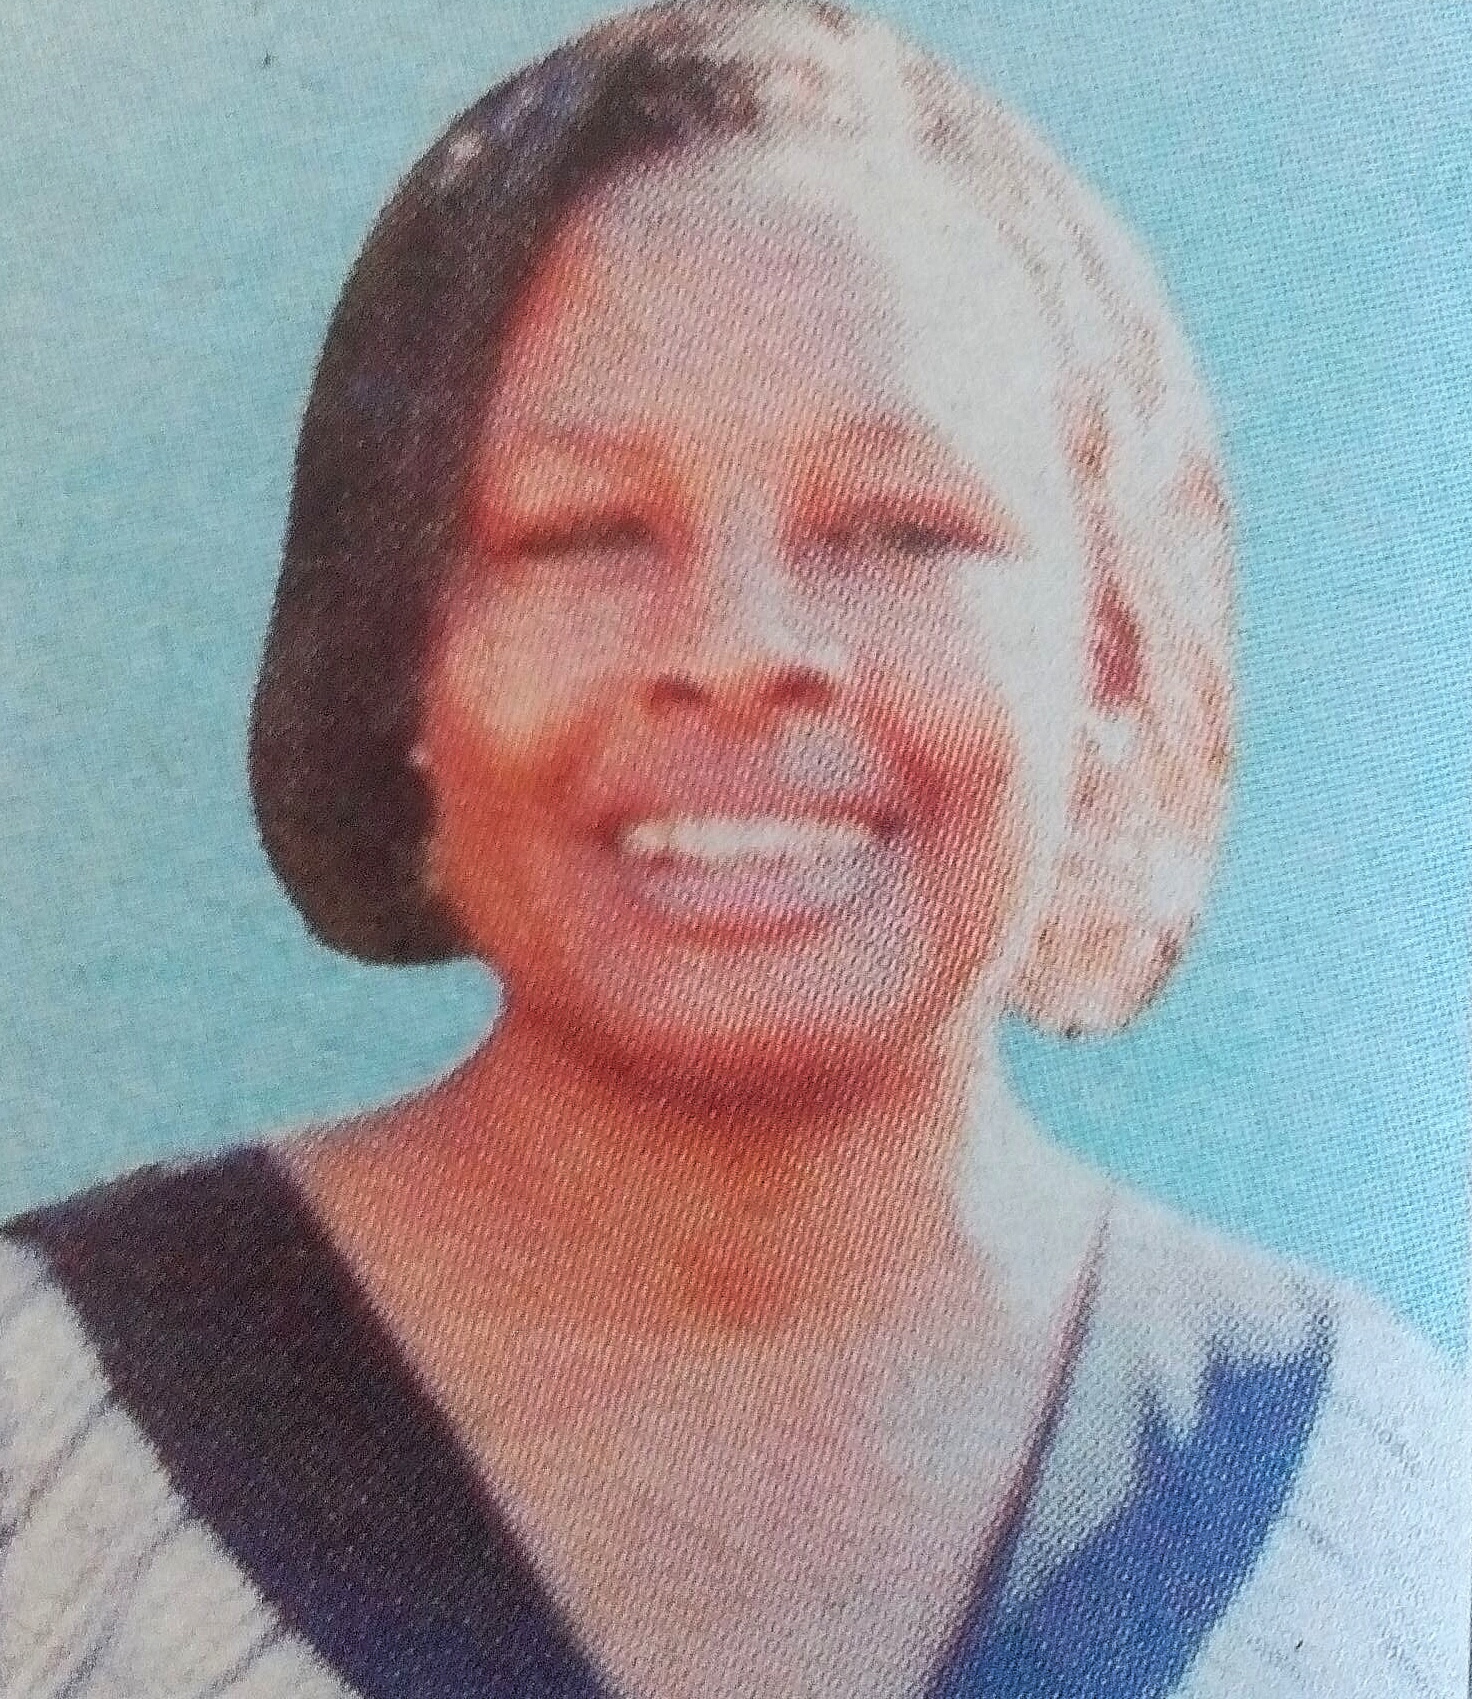 Obituary Image of Mary Kathure Muriiki